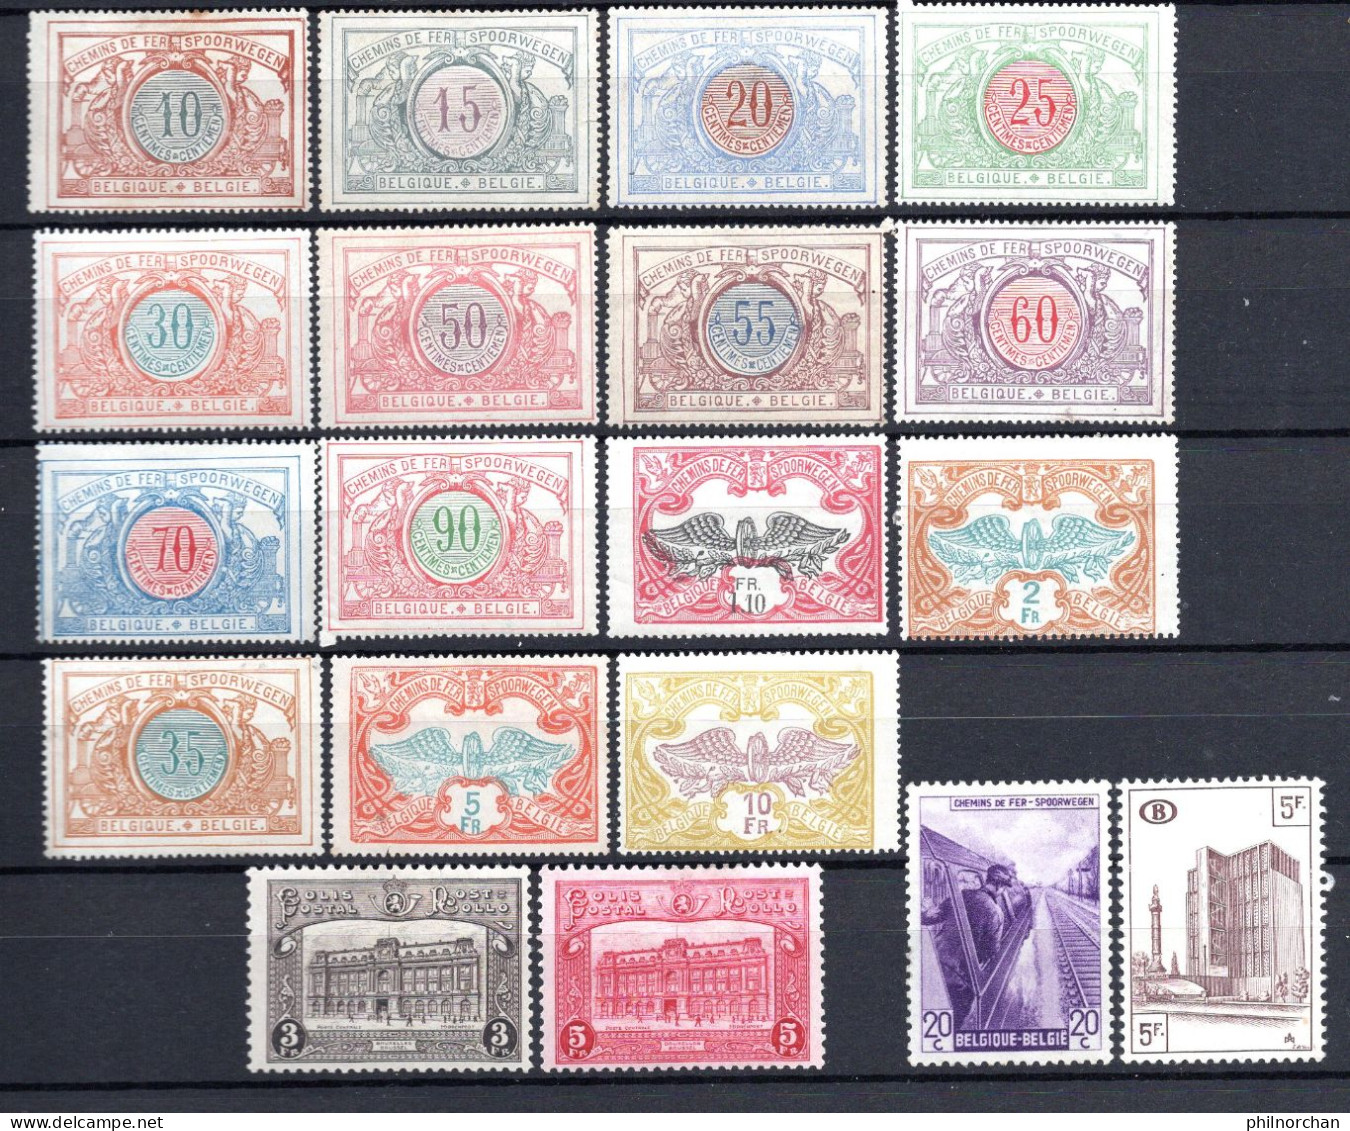 Belgique 1902à1953 Colis Postaux Neufs  0,80 €   19 Timbres Différents   (cote 7,90 €, 19 Valeurs) - Ungebraucht